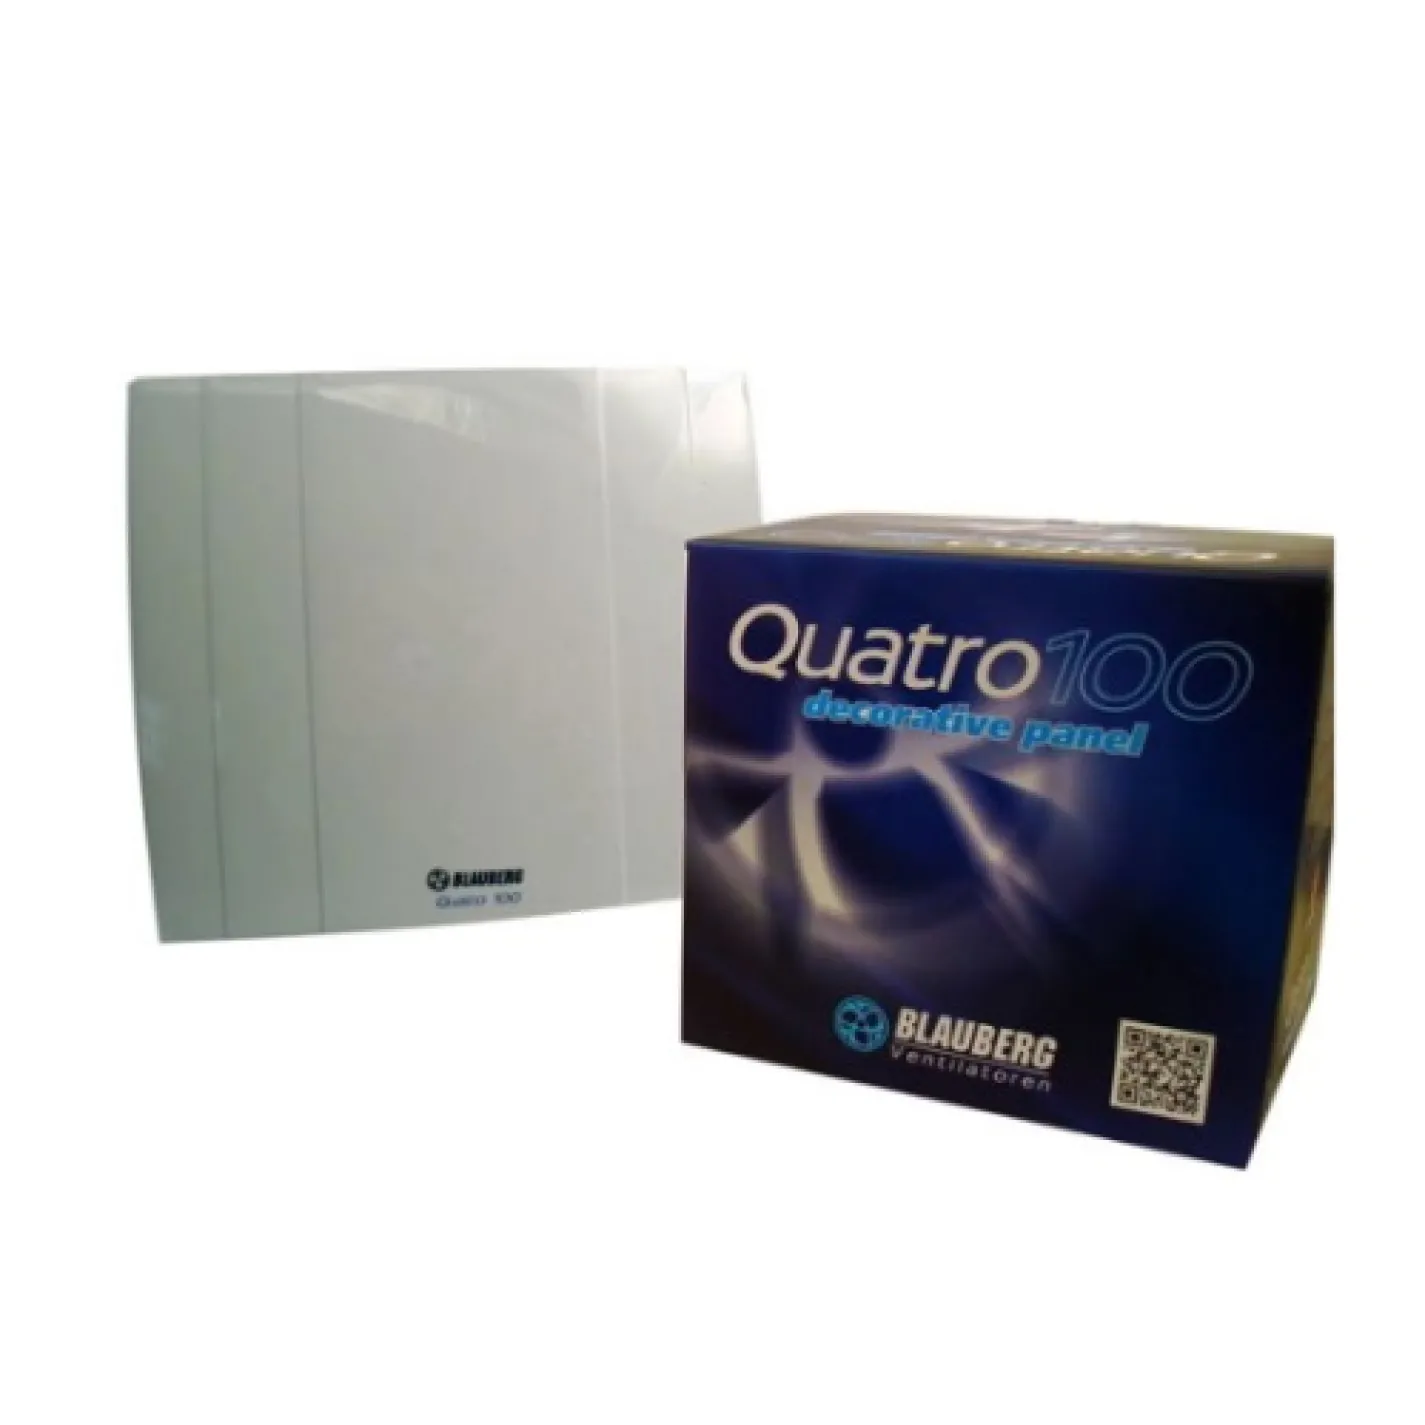 Вытяжной вентилятор Blauberg Quatro 100 S - Фото 2